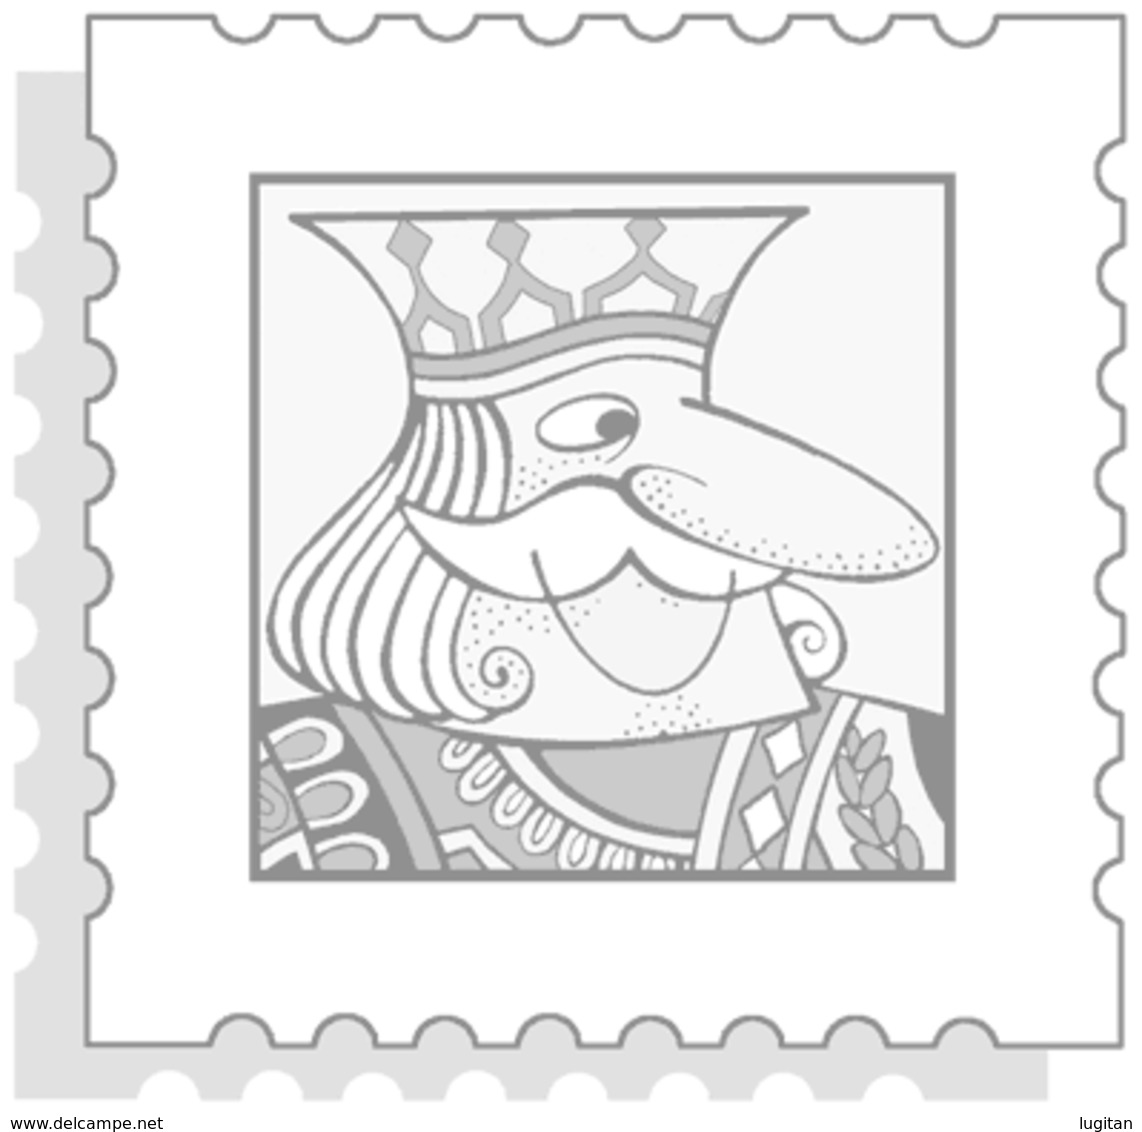 AGGIORNAMENTO MARINI -  VATICANO ANNO 2007 EMISSIONI CONGIUNTE-  NUOVI - SPECIAL PRICE - Stamp Boxes